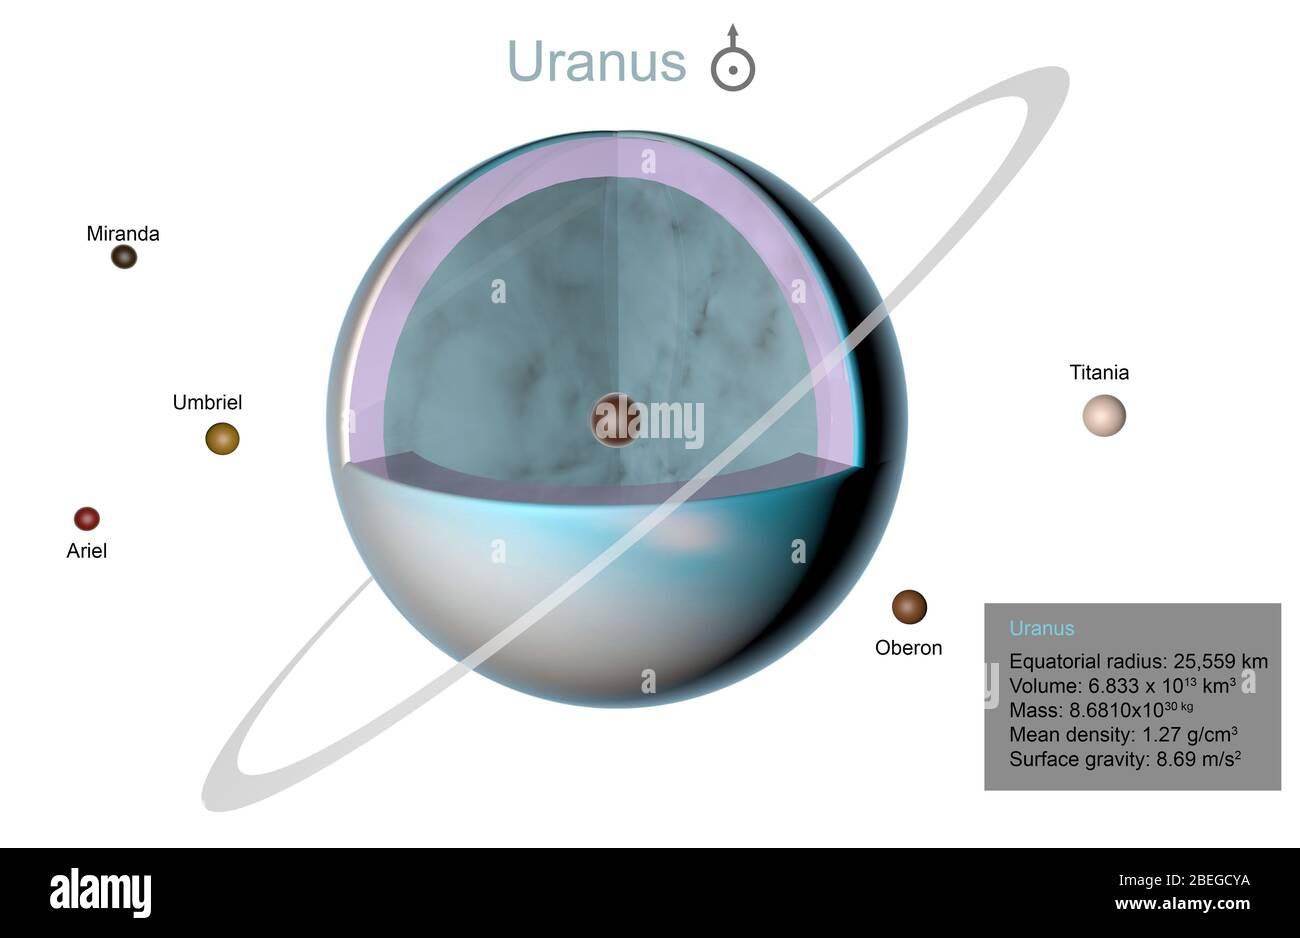 Ilustración de Urano en vista de corte, revelando su estructura. También se muestran los cinco principales satélites del planeta: Miranda, Umbriel, Ariel, Titania y Oberon. Foto de stock